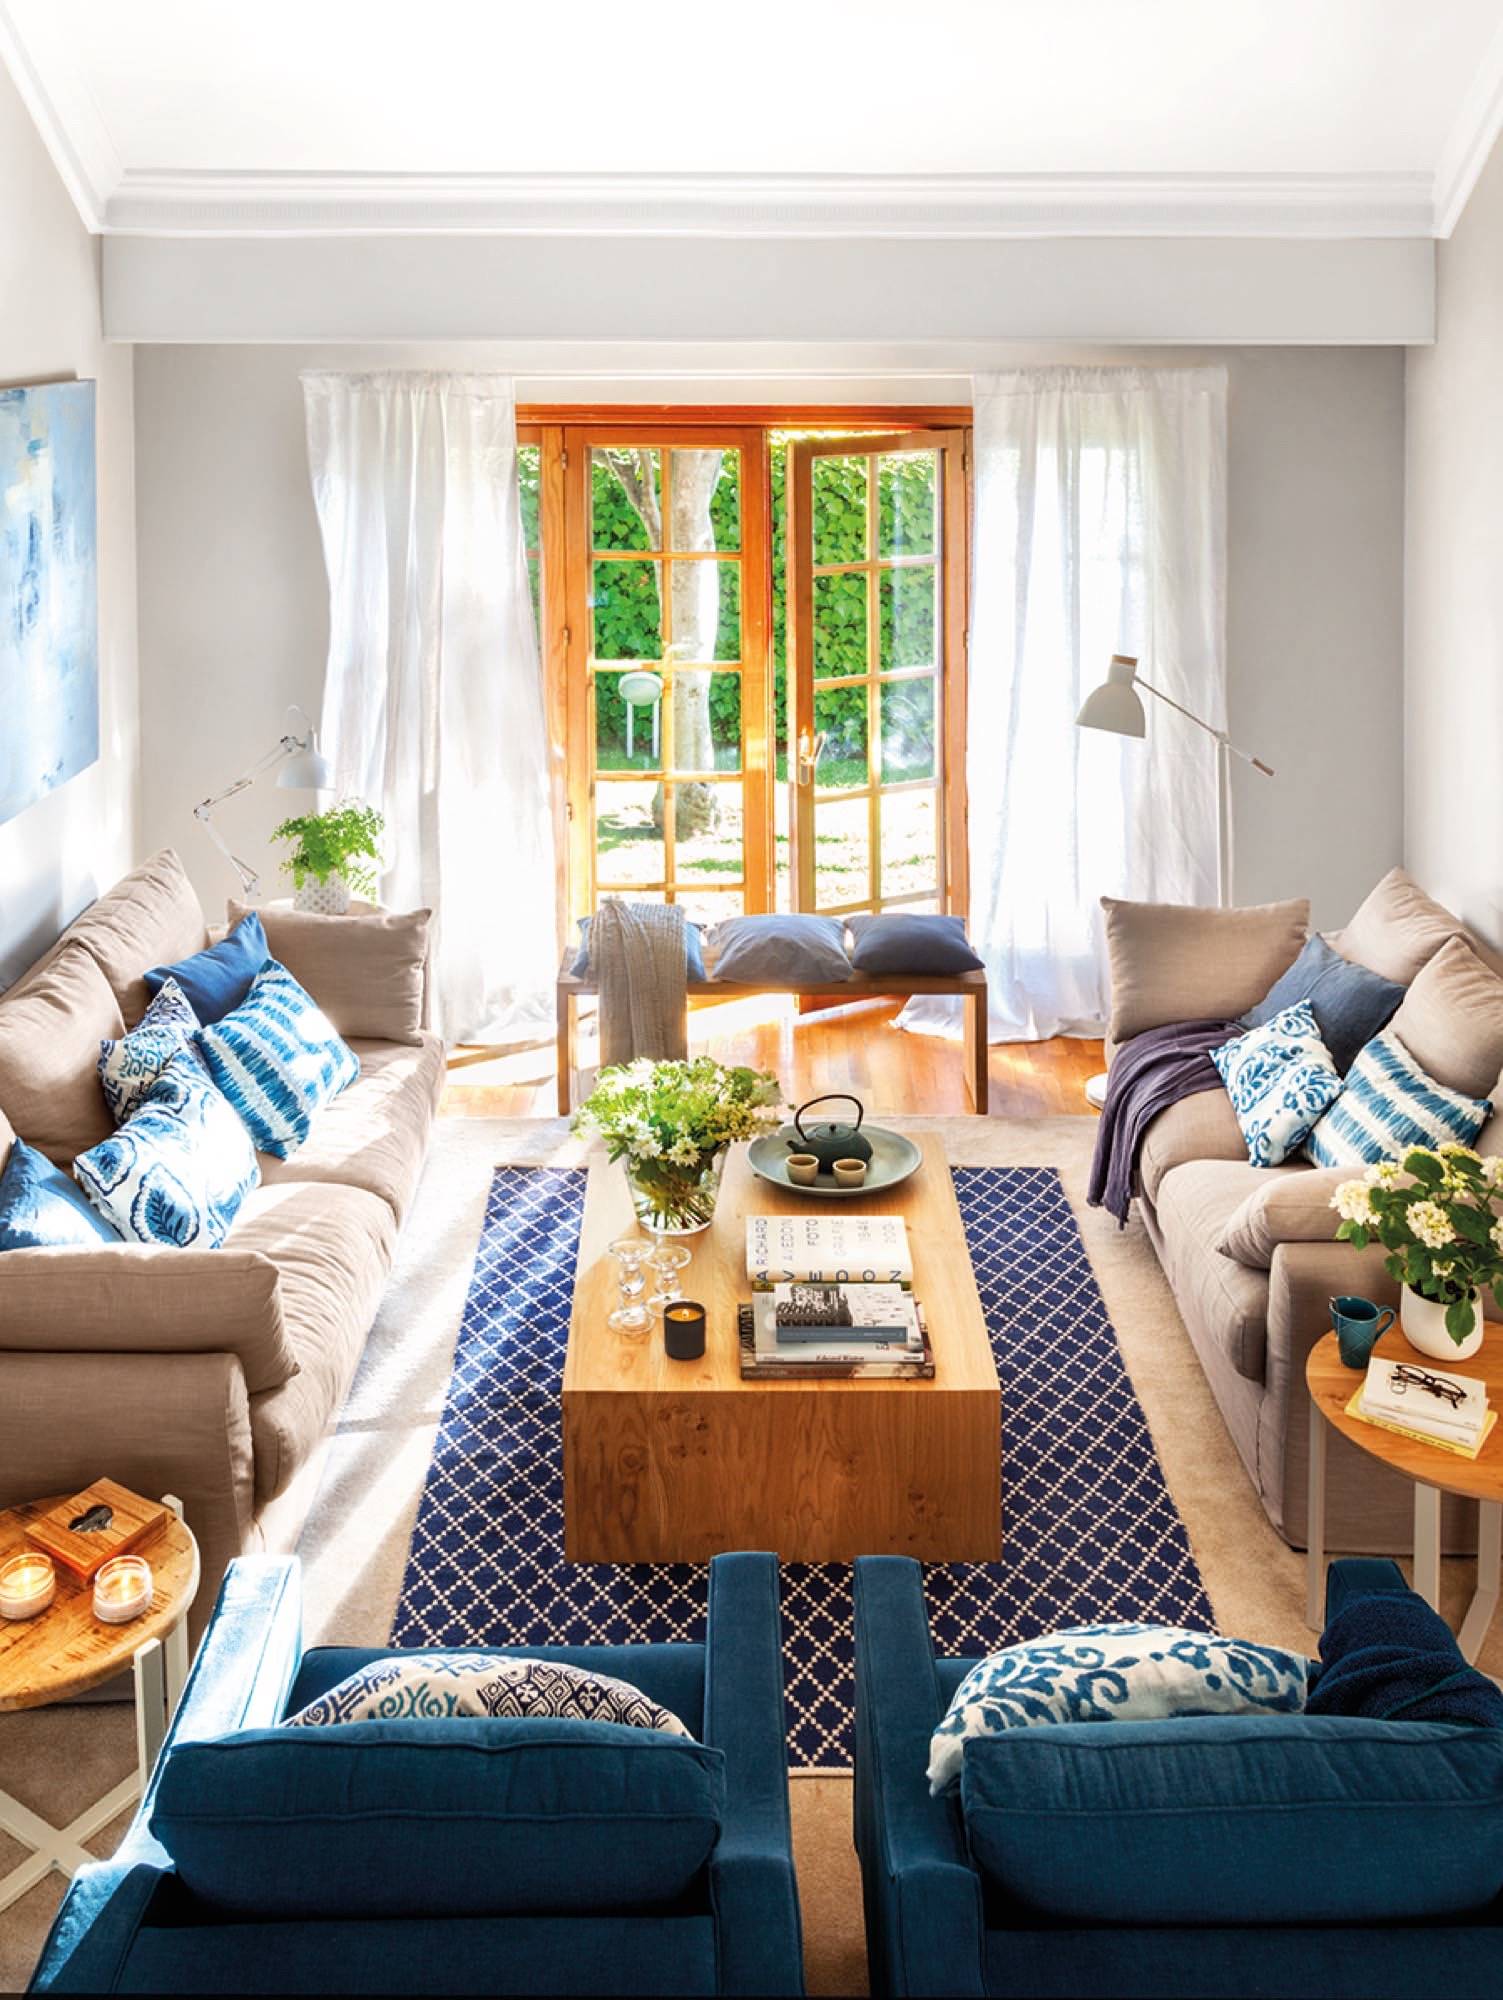 Salón con dos sofás de color beis enfrentados, mesa de madera y textiles azules.